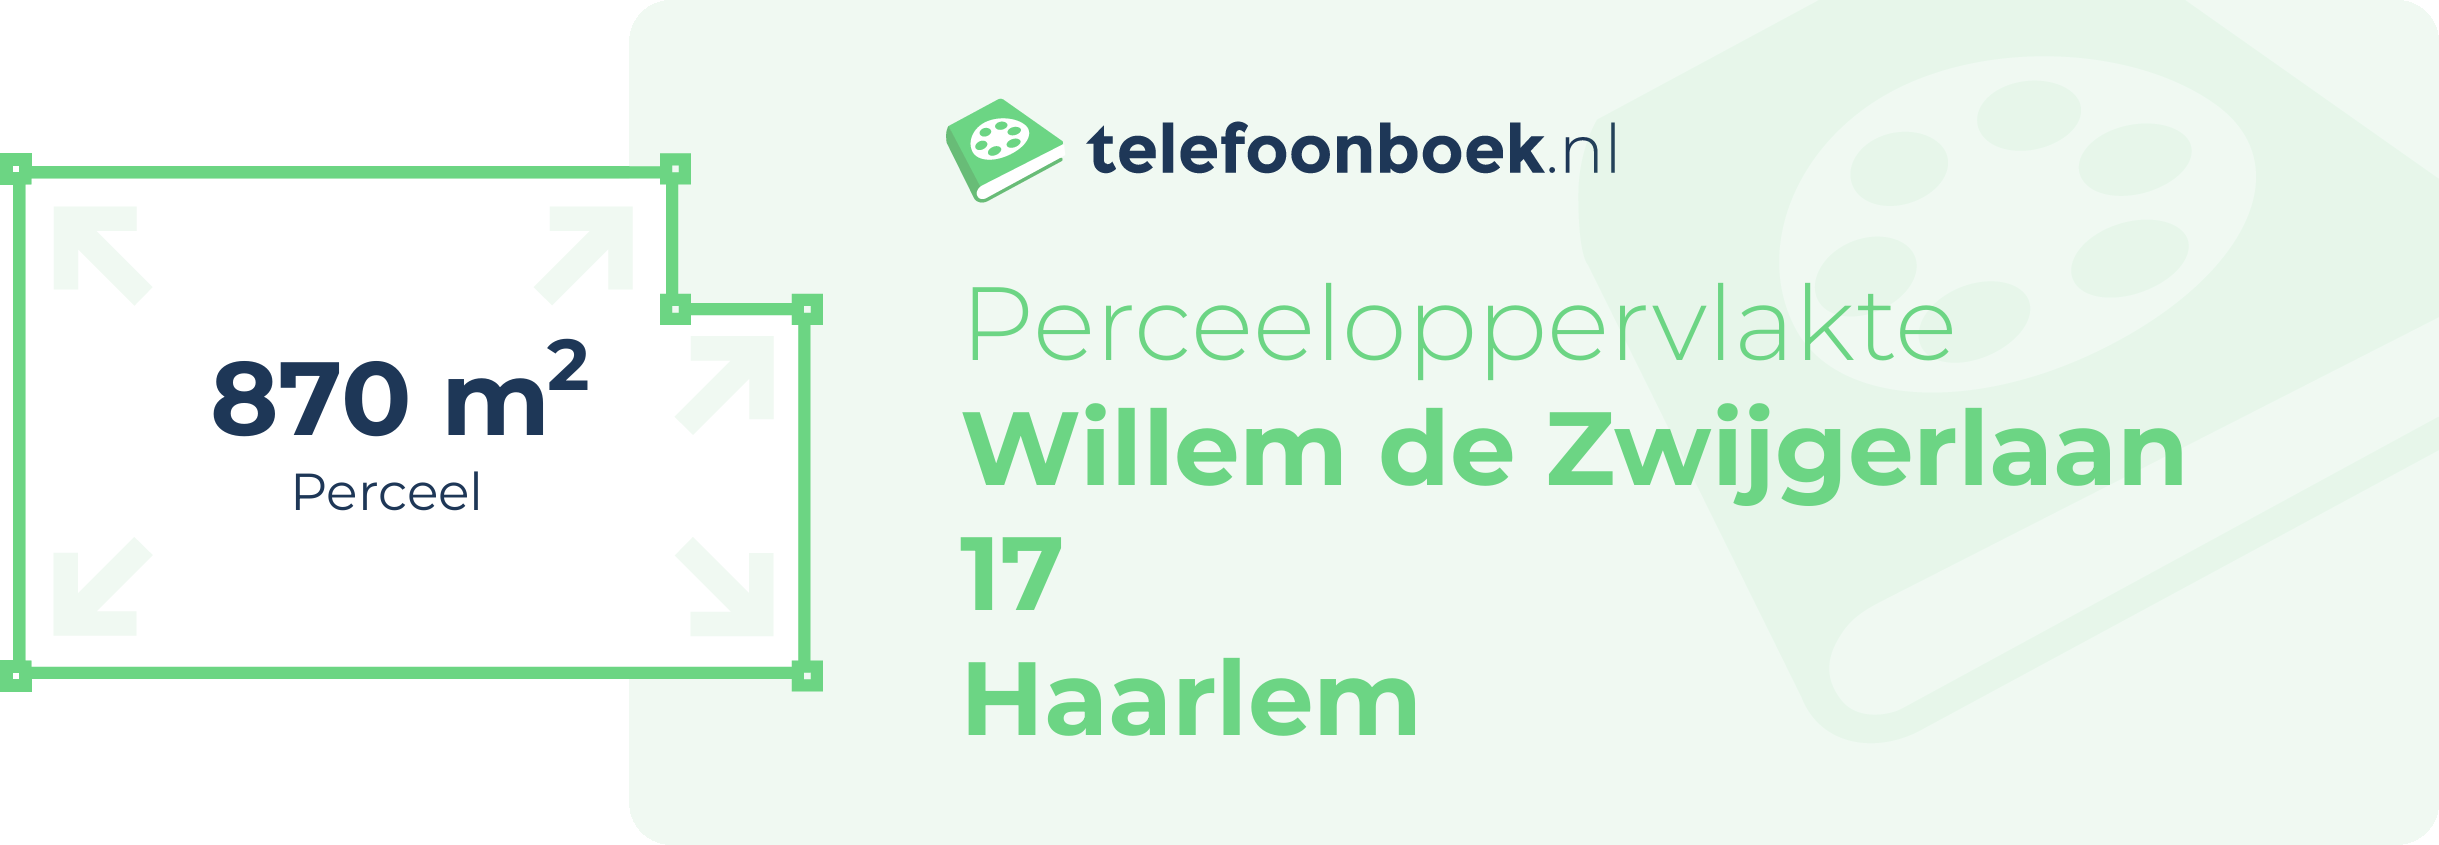 Perceeloppervlakte Willem De Zwijgerlaan 17 Haarlem